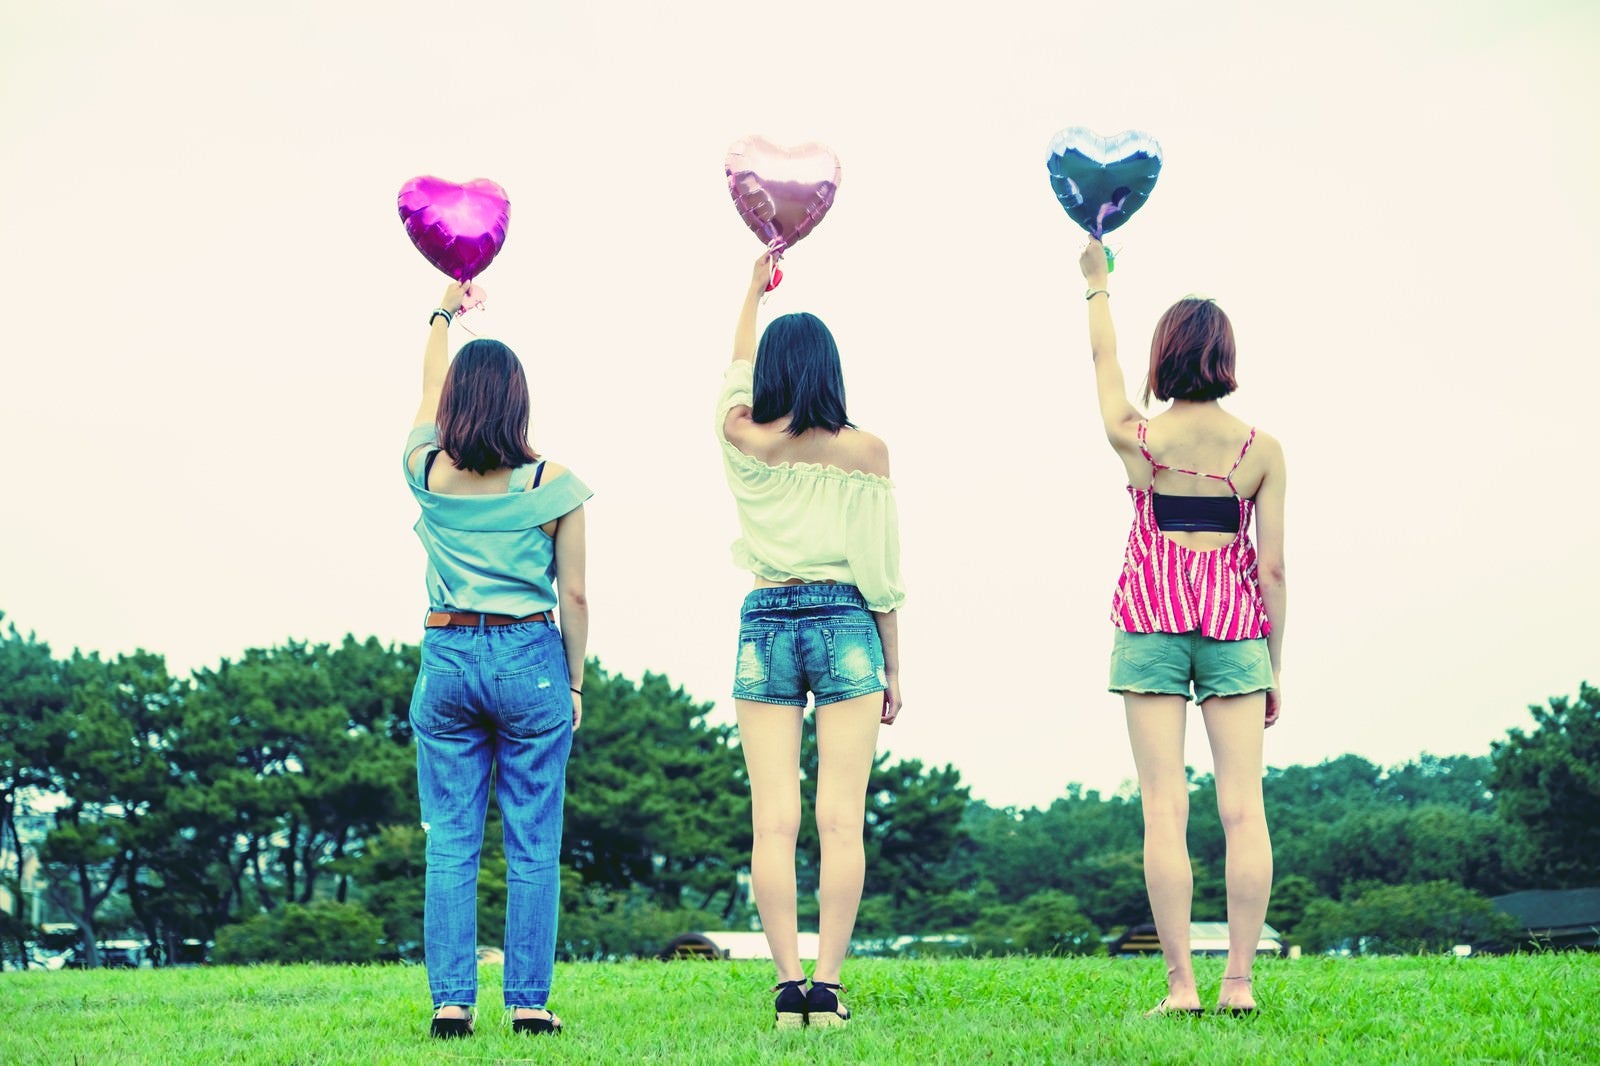 「ハートの風船を持った女子三人組の後ろ姿」の写真